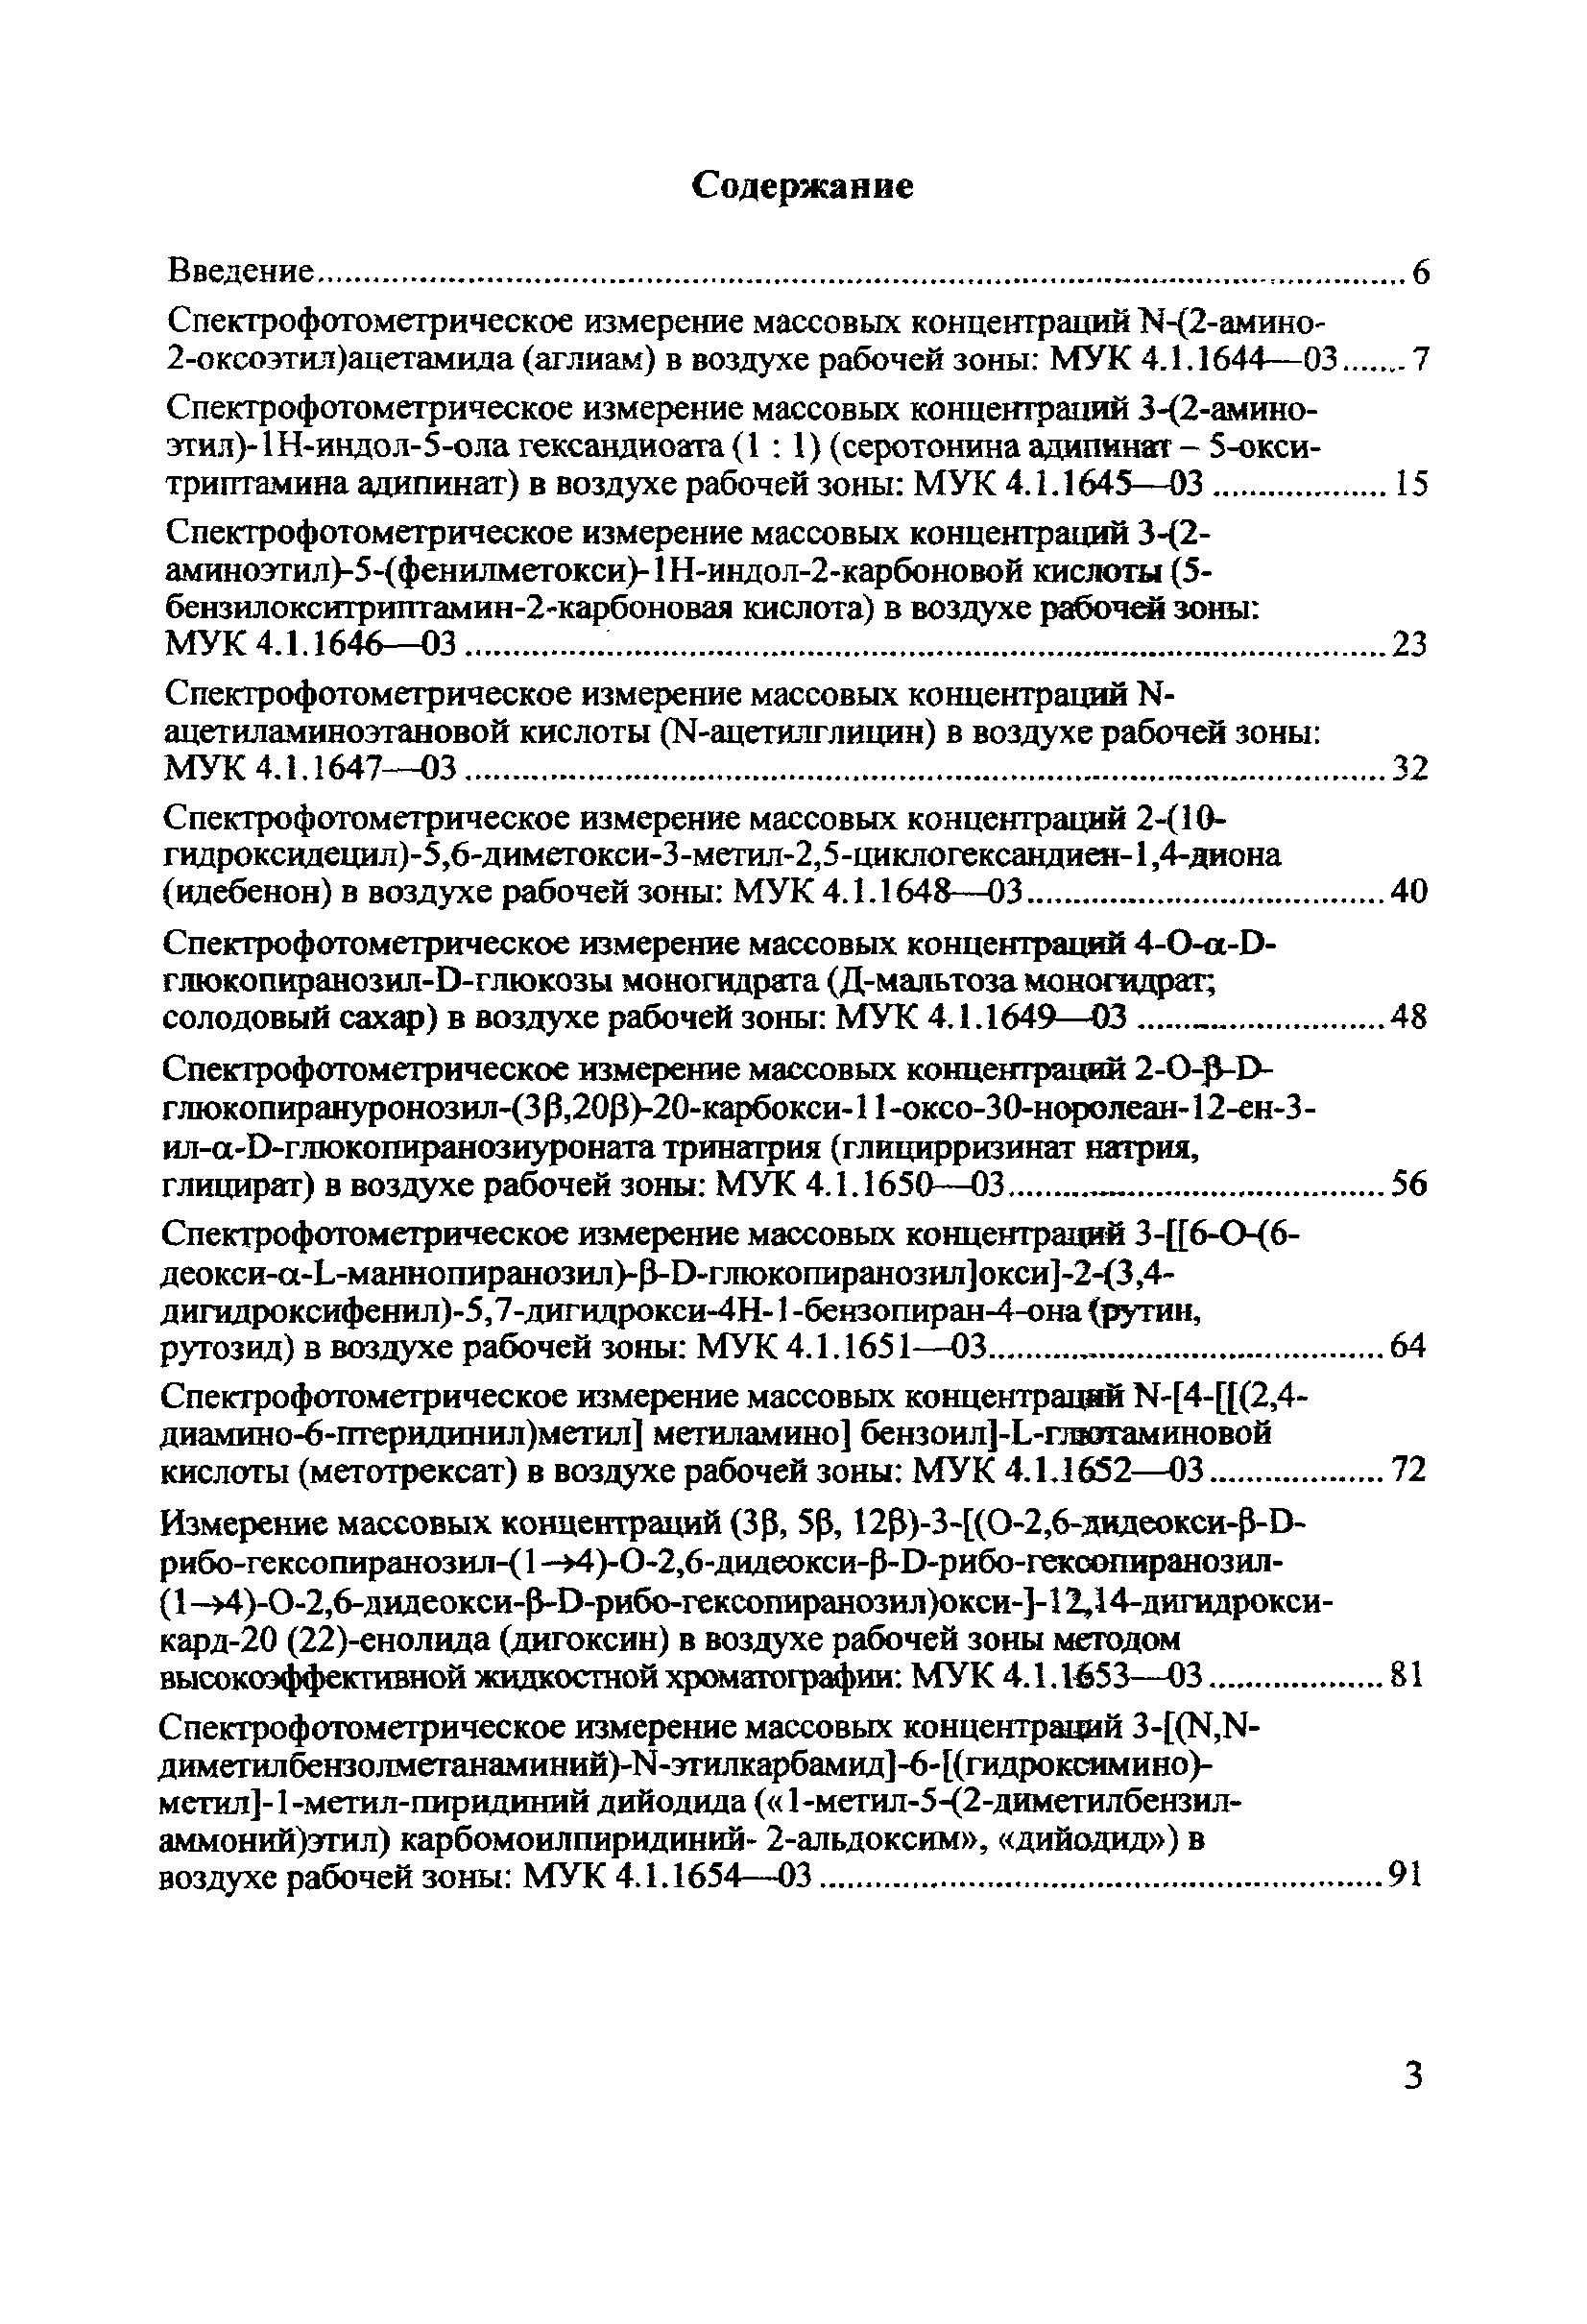 МУК 4.1.1660-03